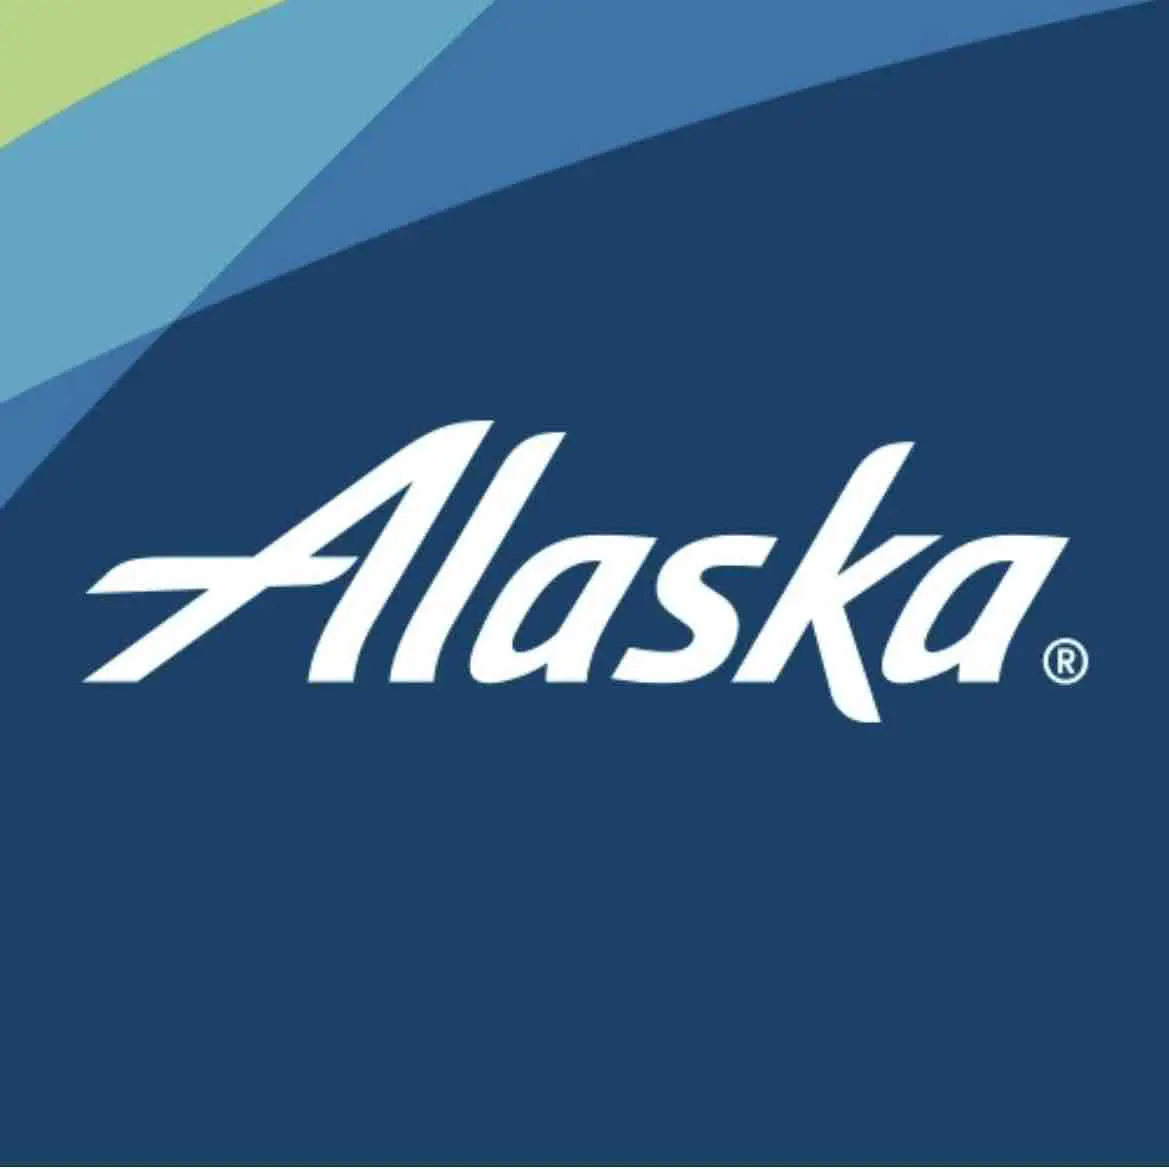 https://massagetraveler.com/wp-content/uploads/2022/12/Alaska-logo.jpg